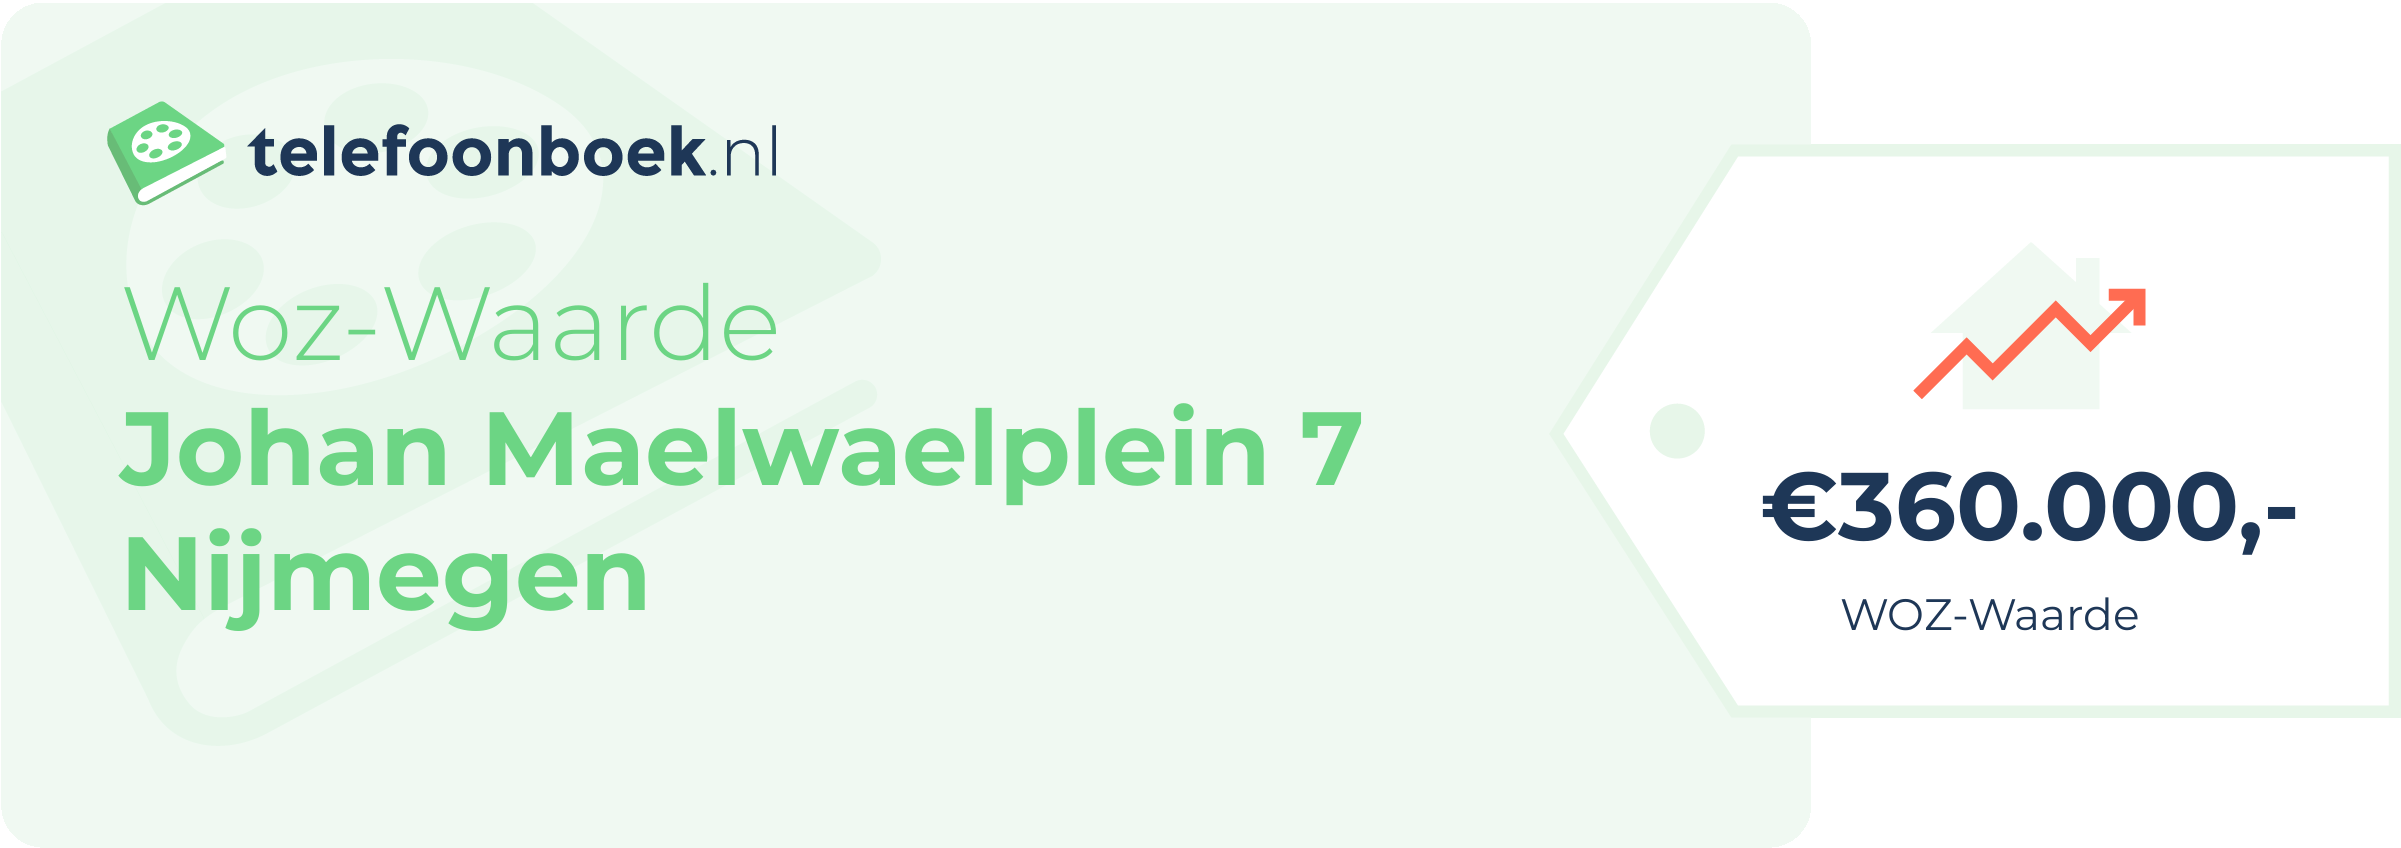 WOZ-waarde Johan Maelwaelplein 7 Nijmegen